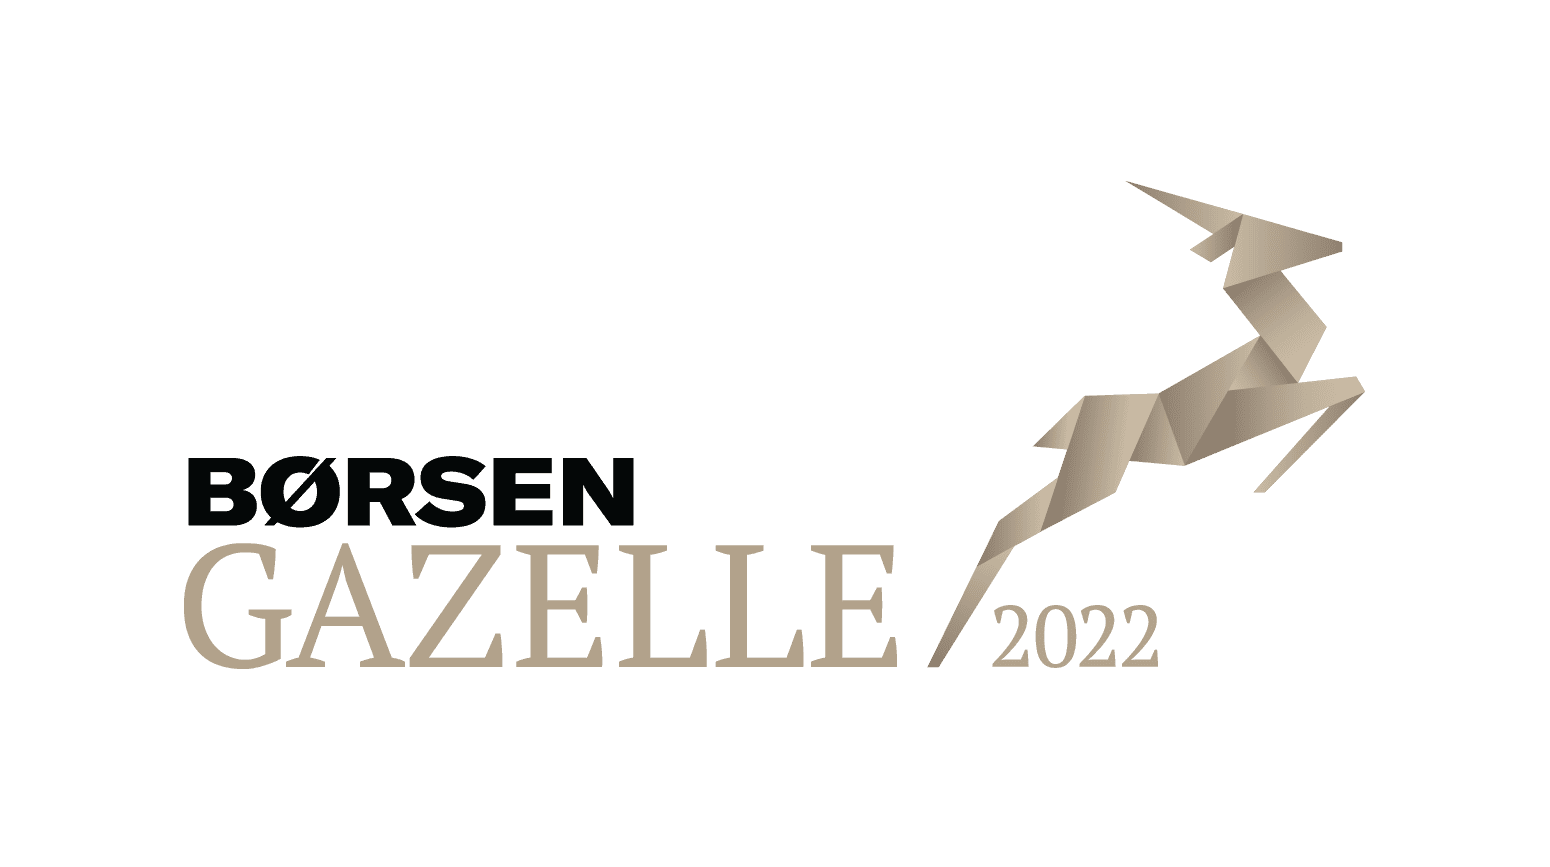 gazelle, borsen, borsen gazelle, gazelle 2022, børsen, boersen,